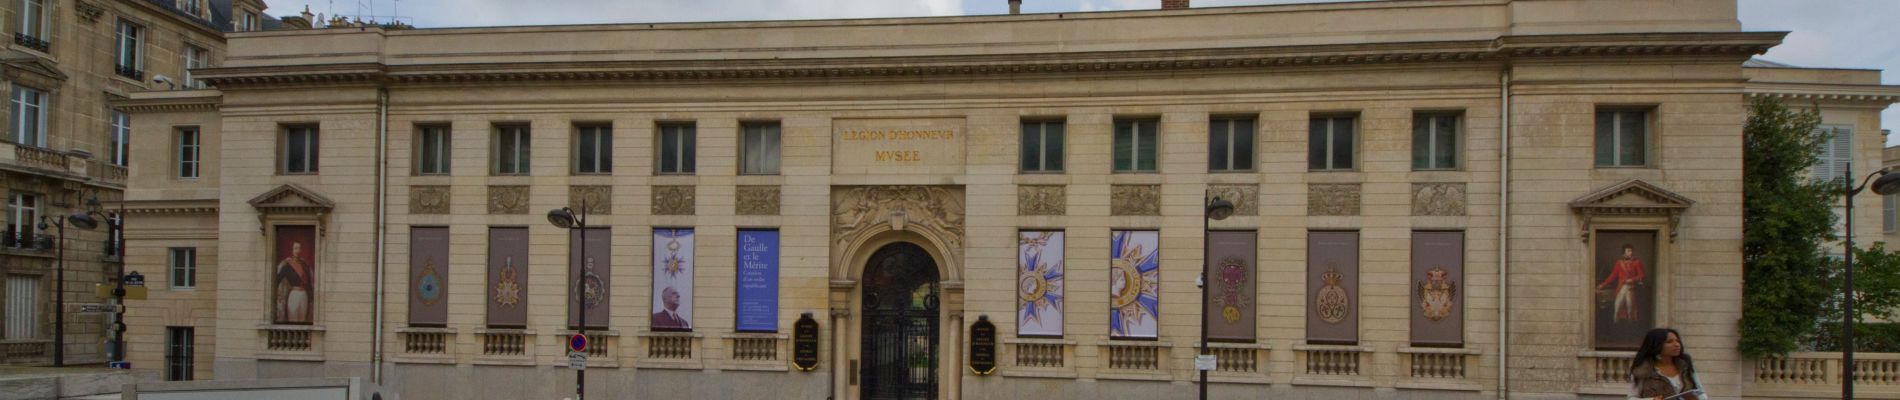 Punto de interés París - Musée national de la Légion d’honneur et des ordres de chevalerie - Photo